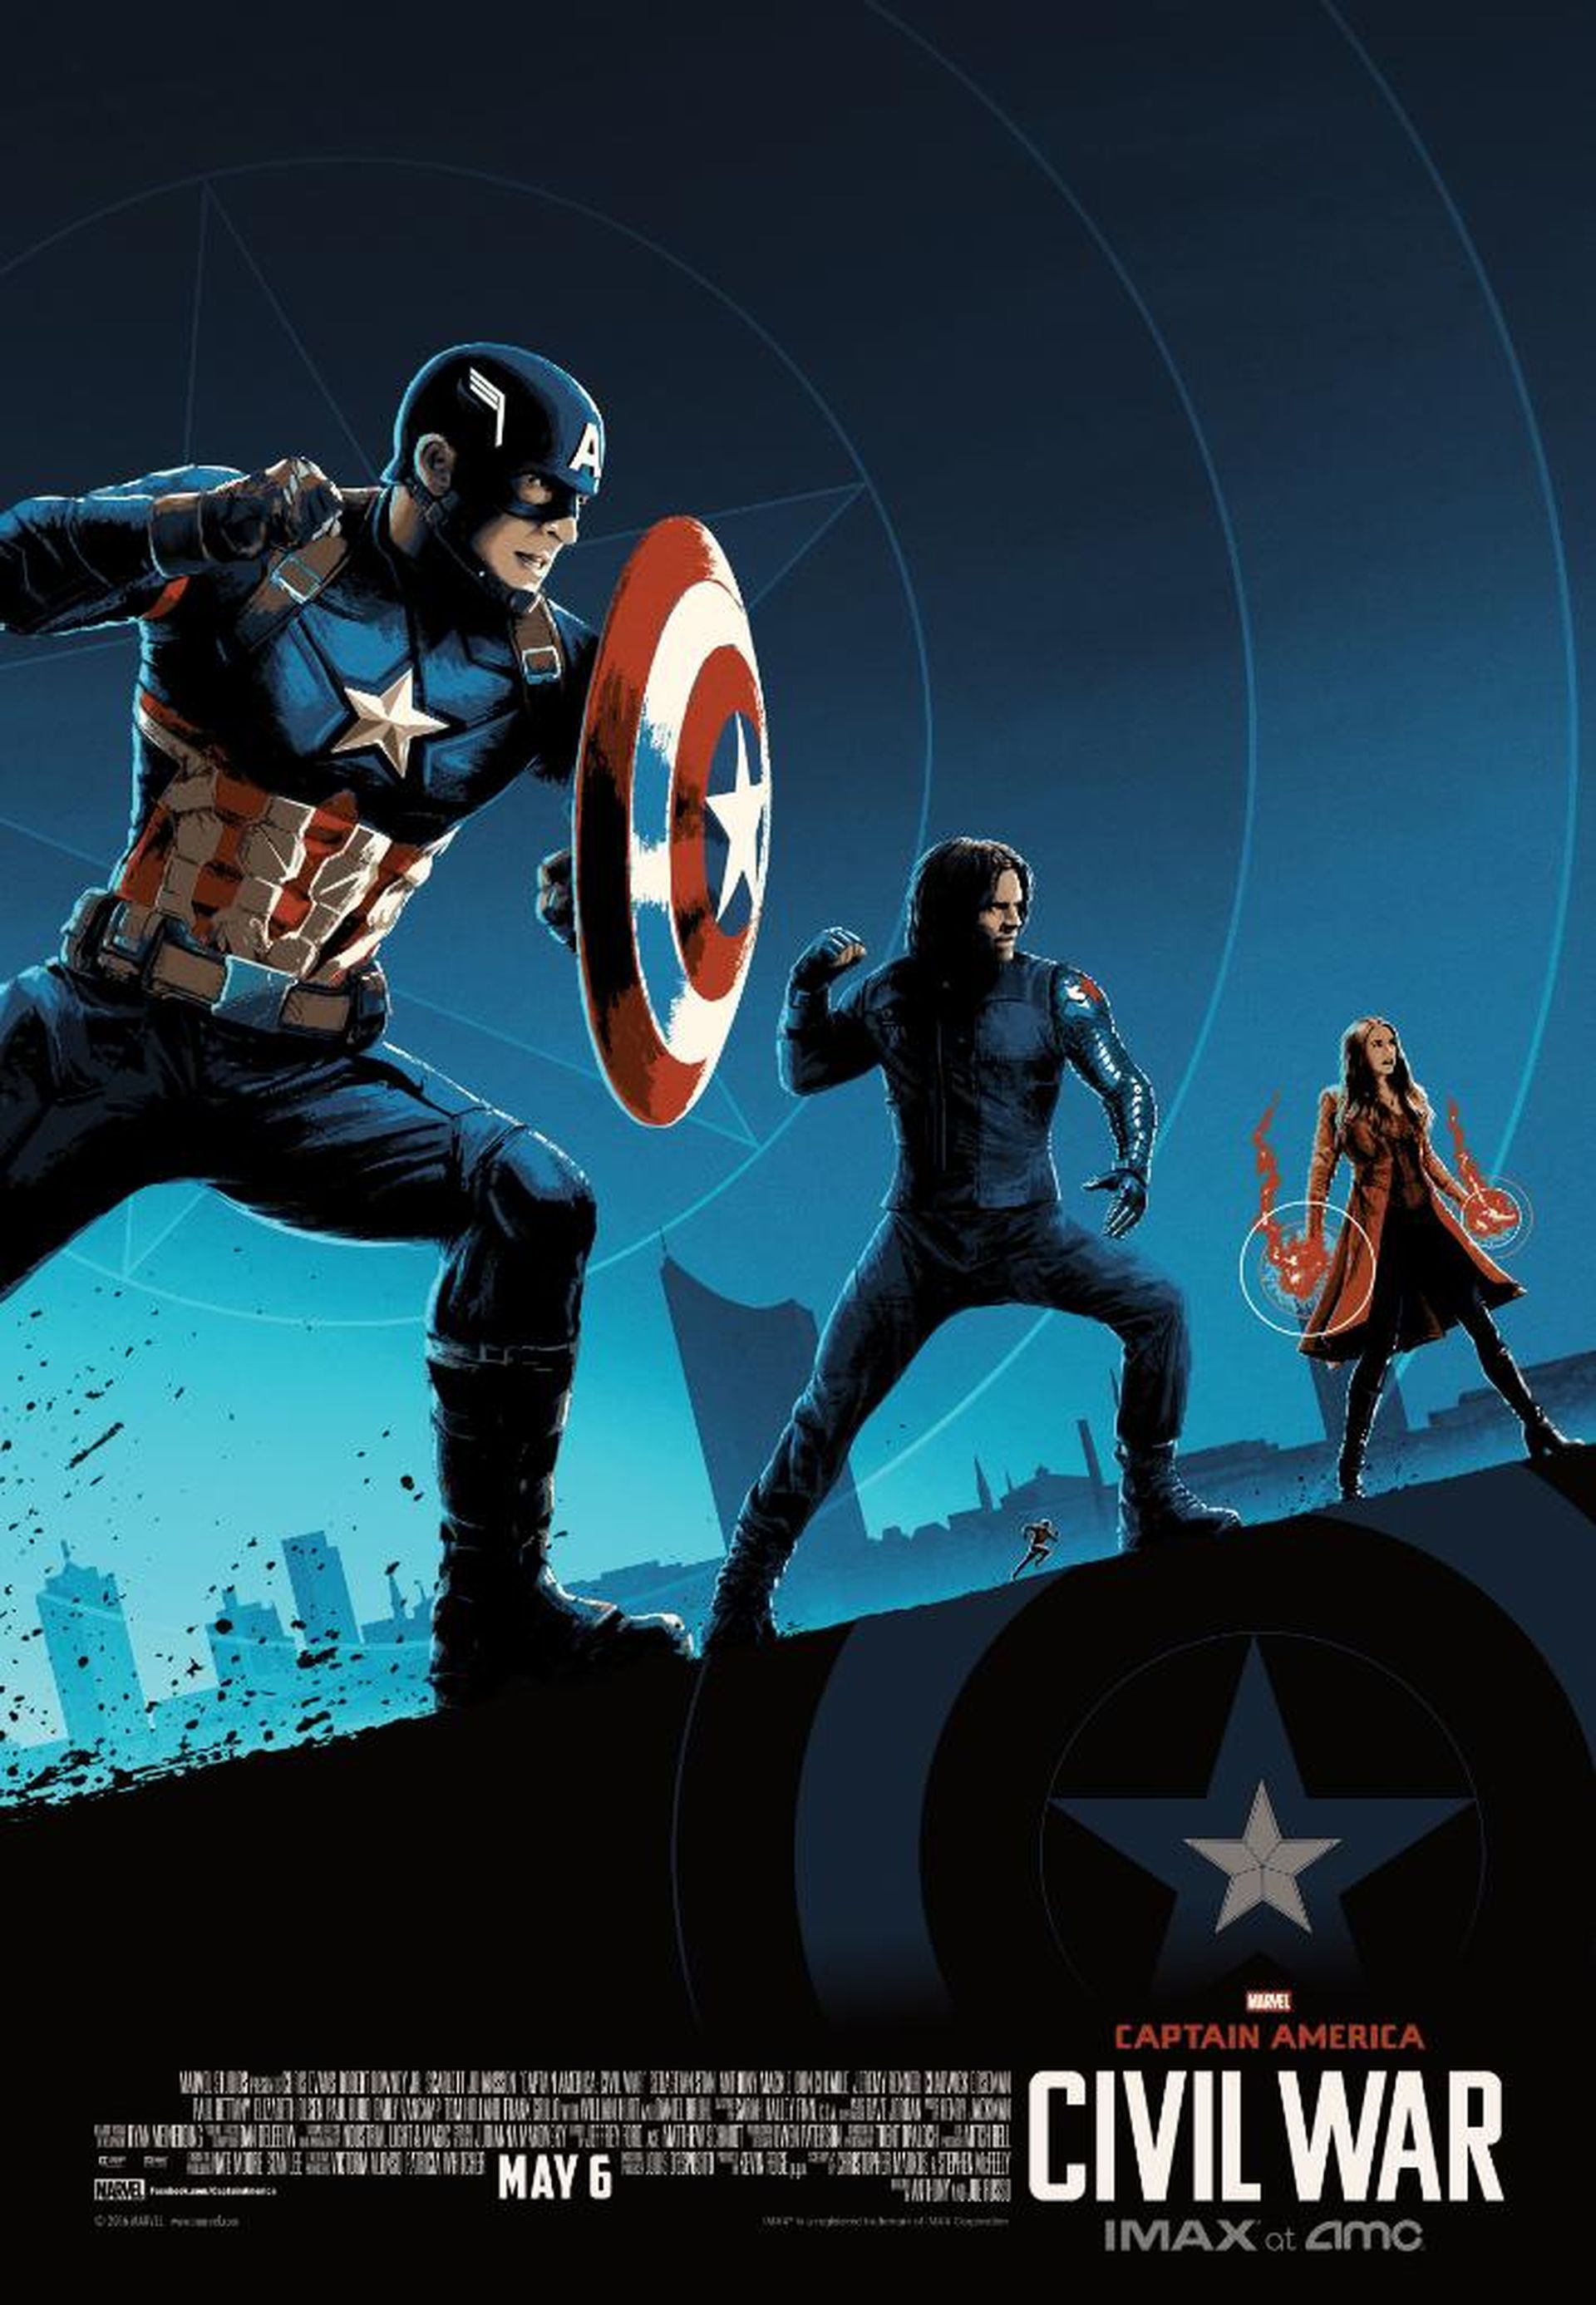 Captain America: Civil War - Posters IMAX